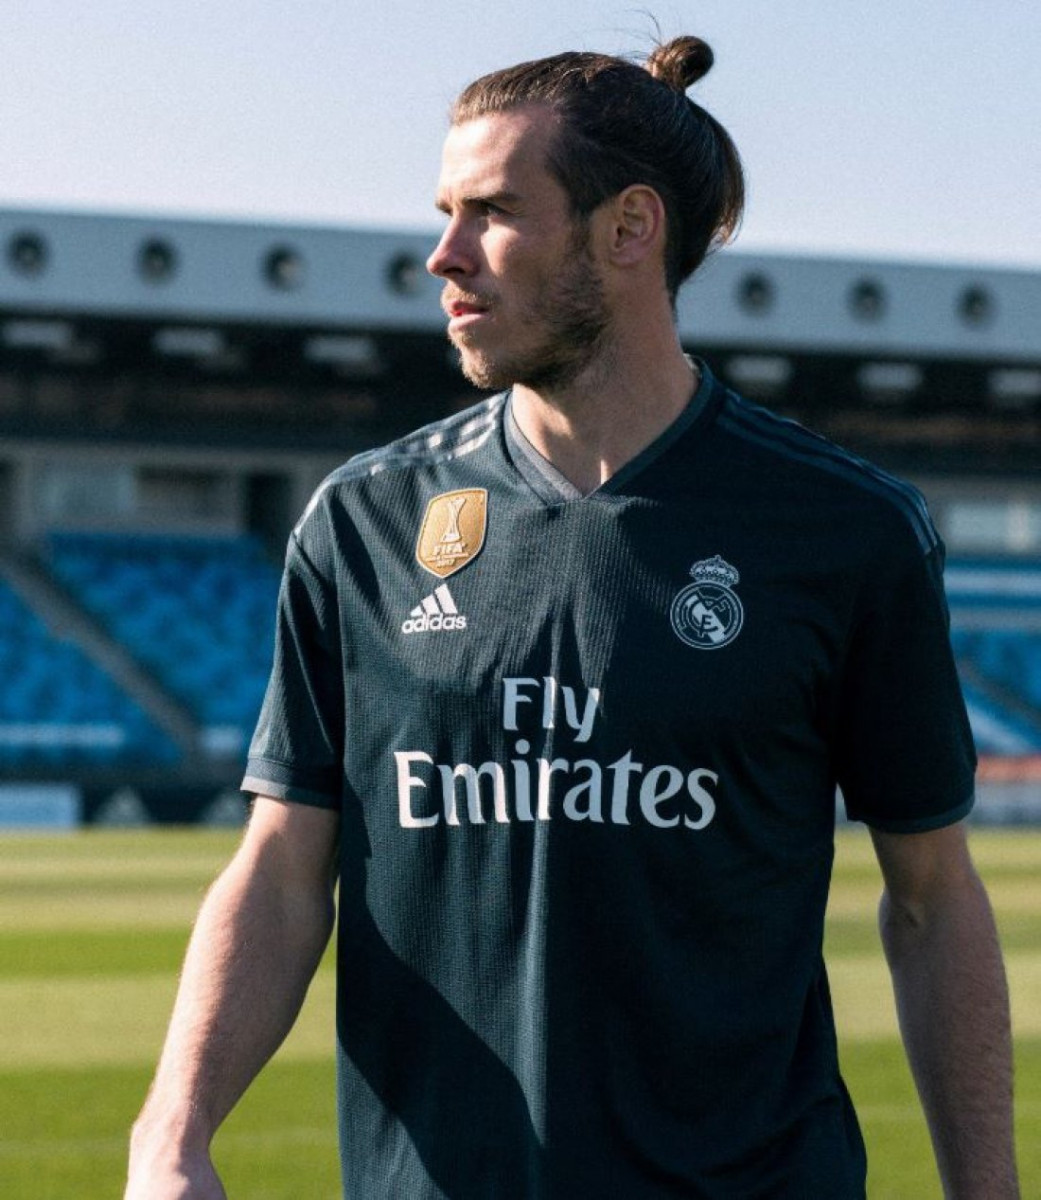 Real Madrid: La camiseta más cara mundo. - Blogs - Fútbol